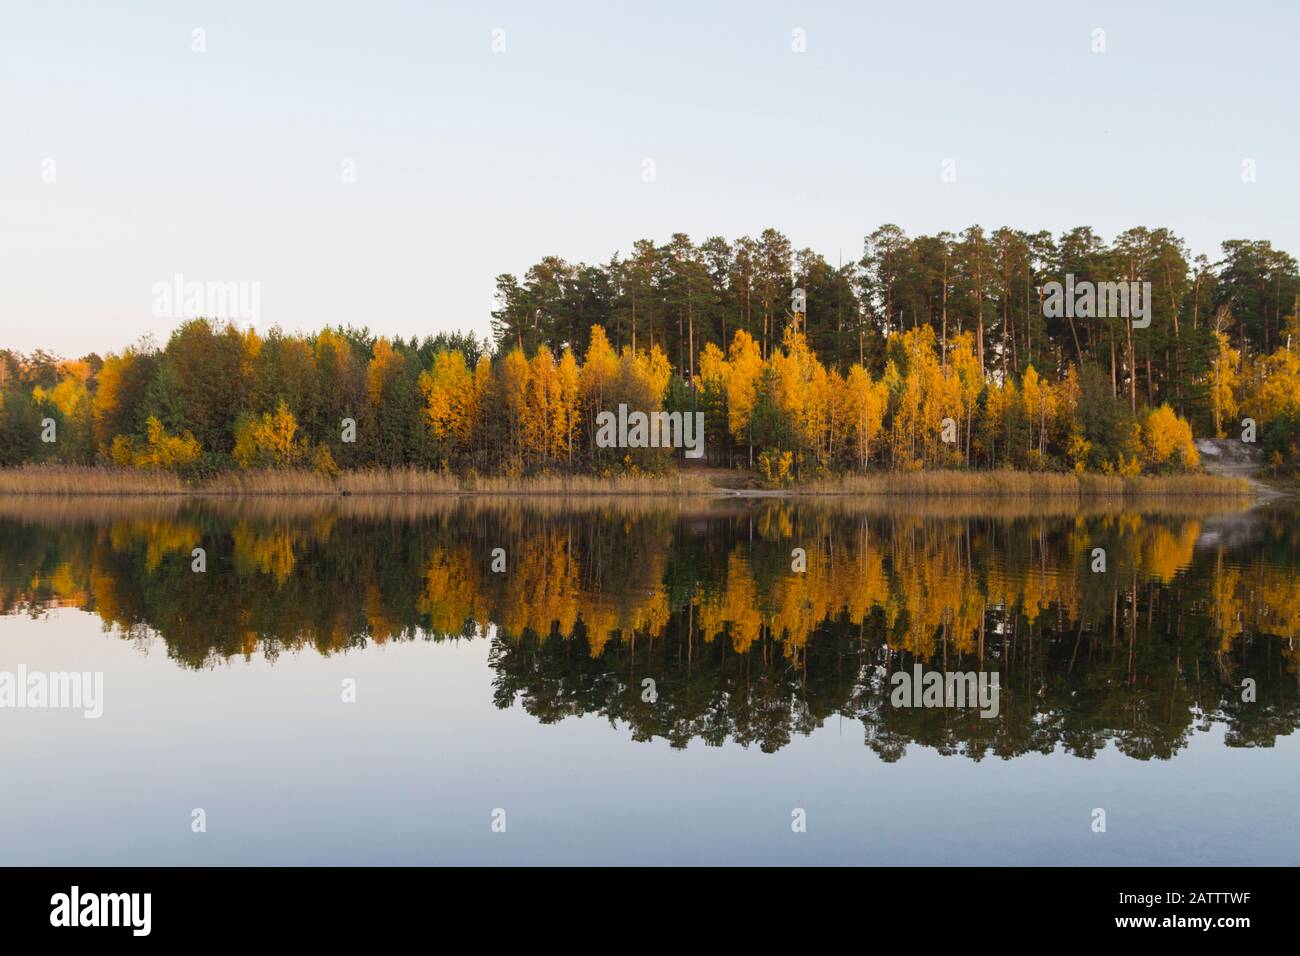 Goldener Wald in der Nähe des Sees. Dunkler Herbsttag. Reflexion im Wasser Stockfoto